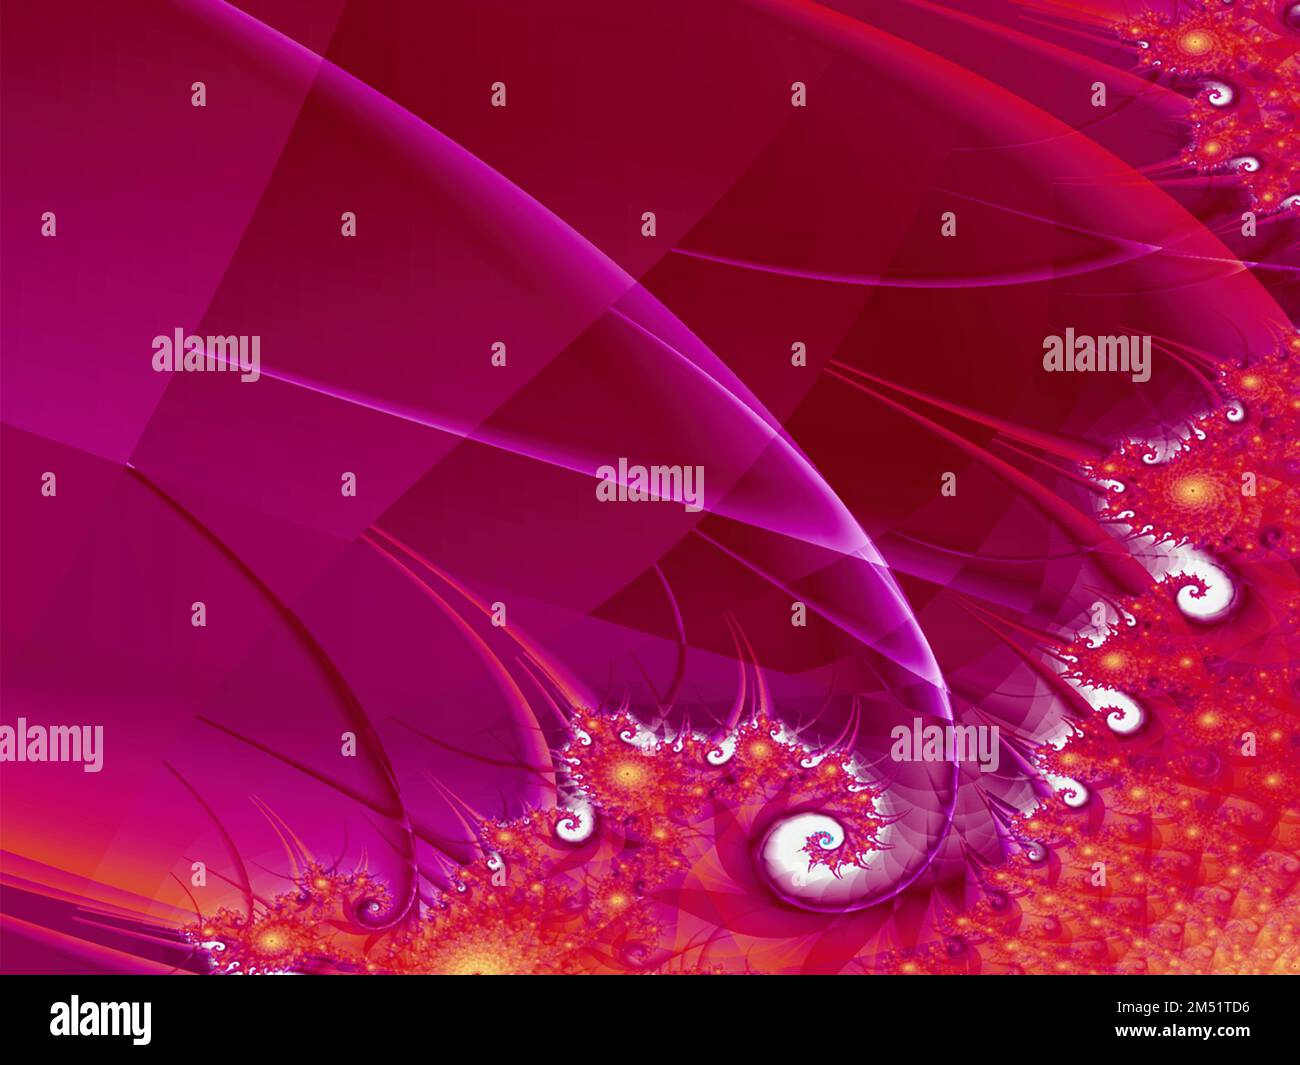 Violett-rote abstrakte Linienzeichnung, digitale Grafik, Hintergrund, Design Stockfoto